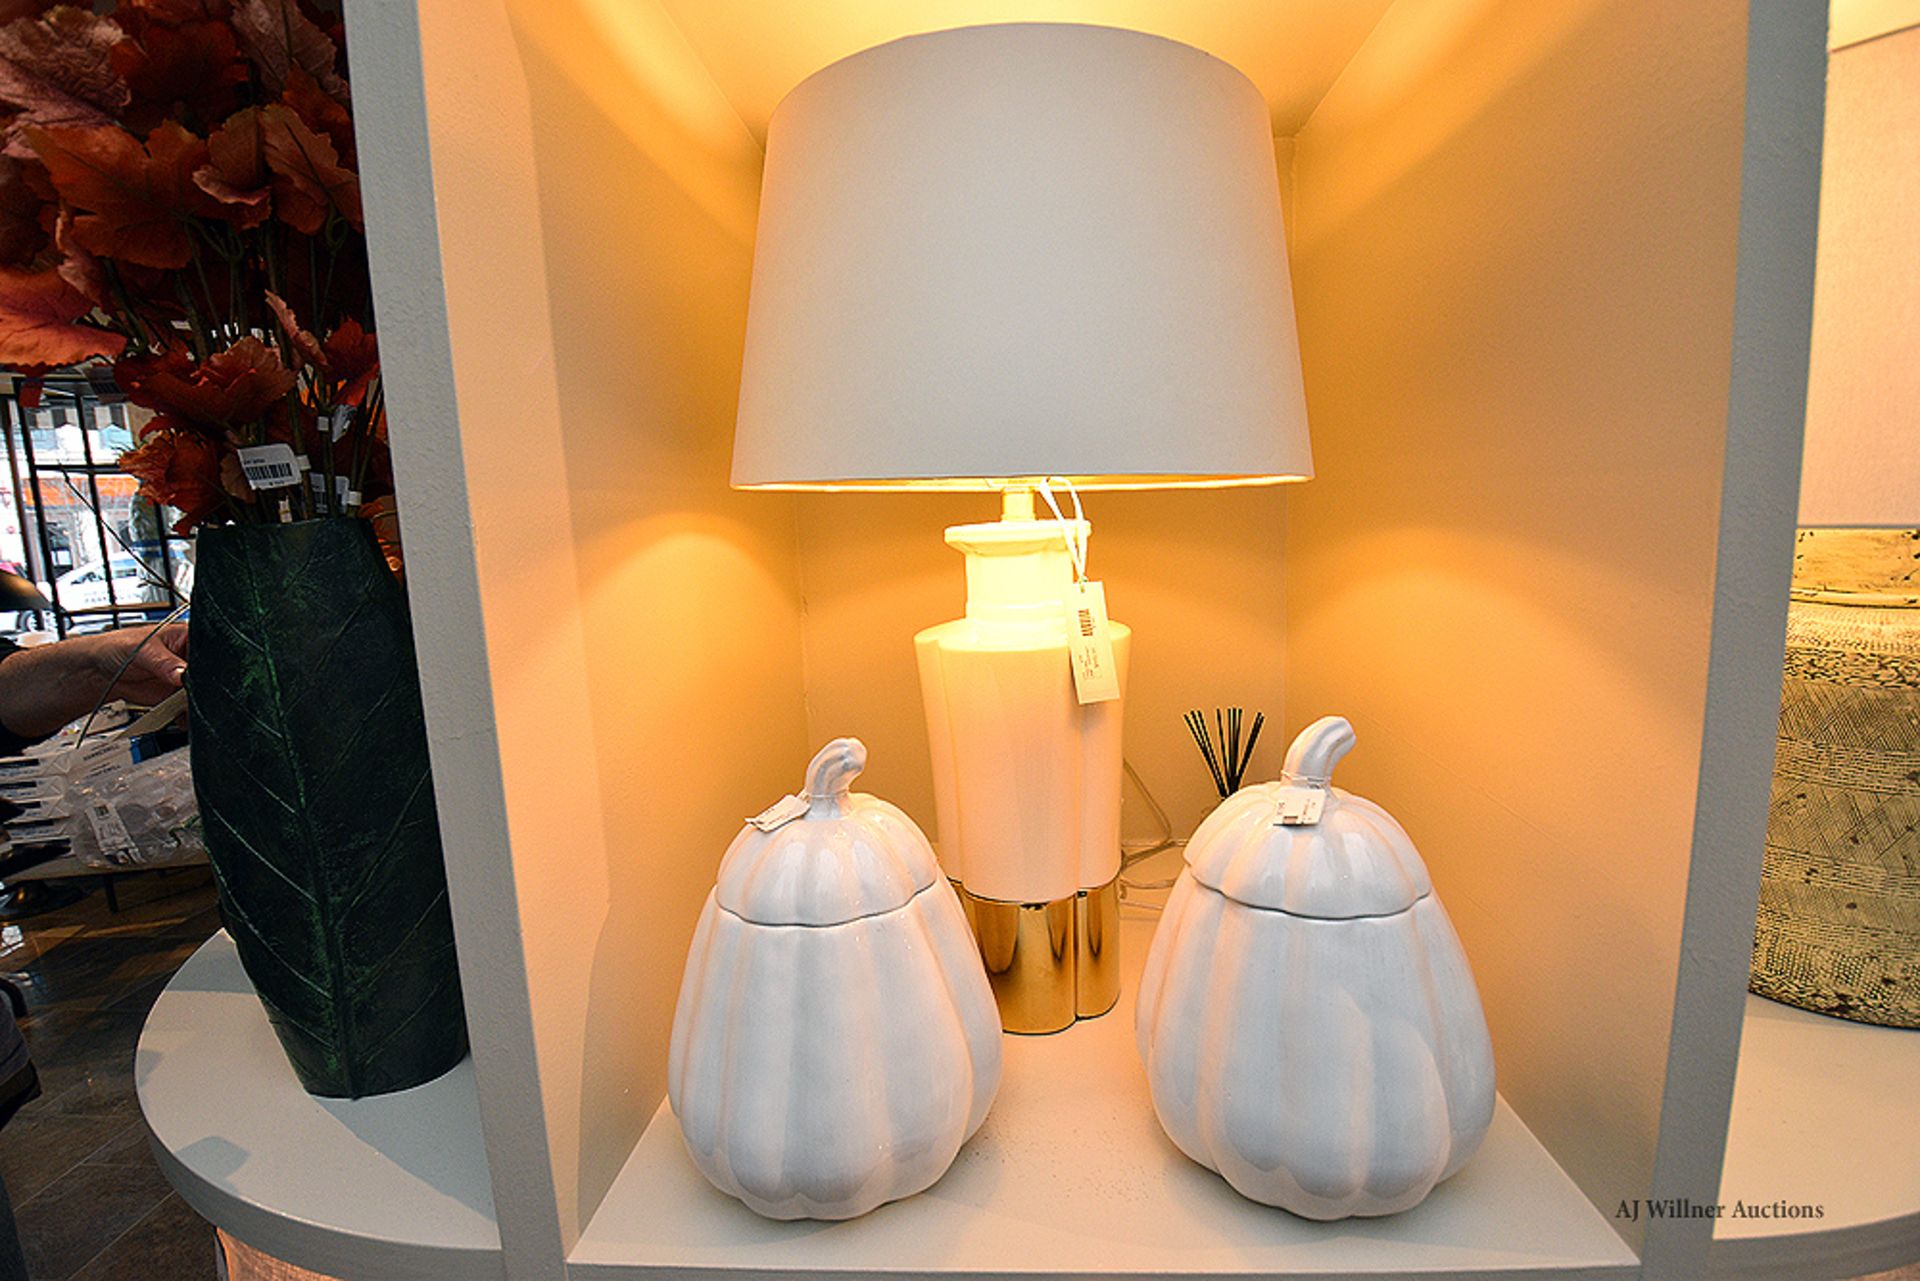 Ceramic Pumpkin Jars & Godfrey Tables Lamp - Image 2 of 2